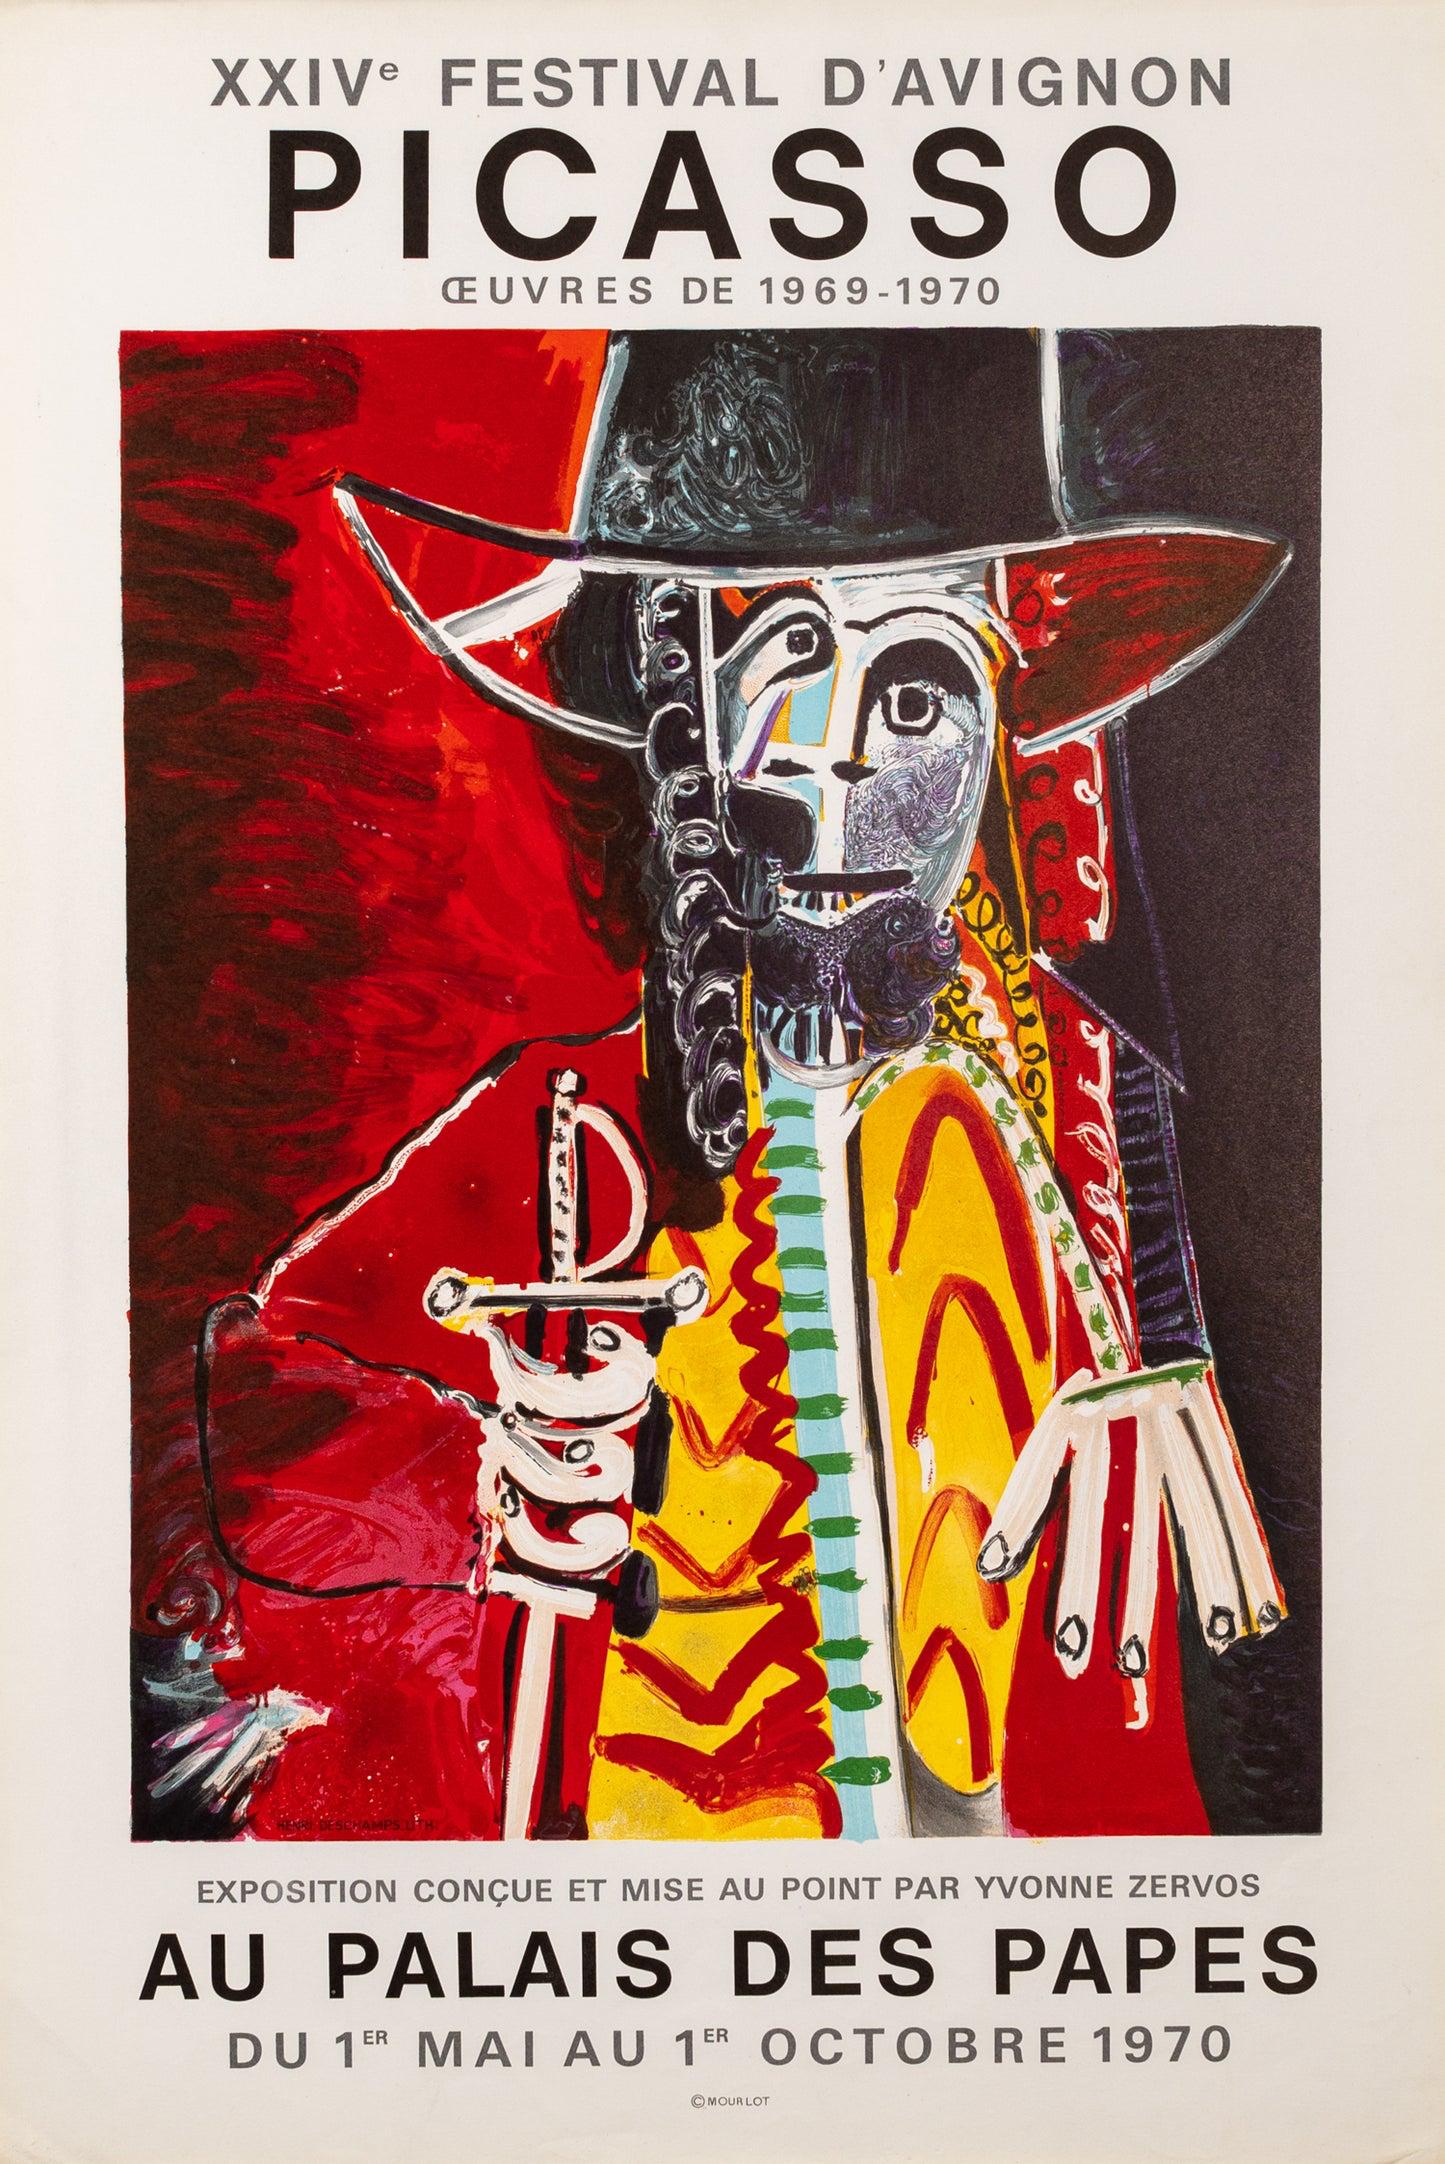 Homme a l'épée - Picasso - Au Palais des Papes (after) Pablo Picasso, 1970